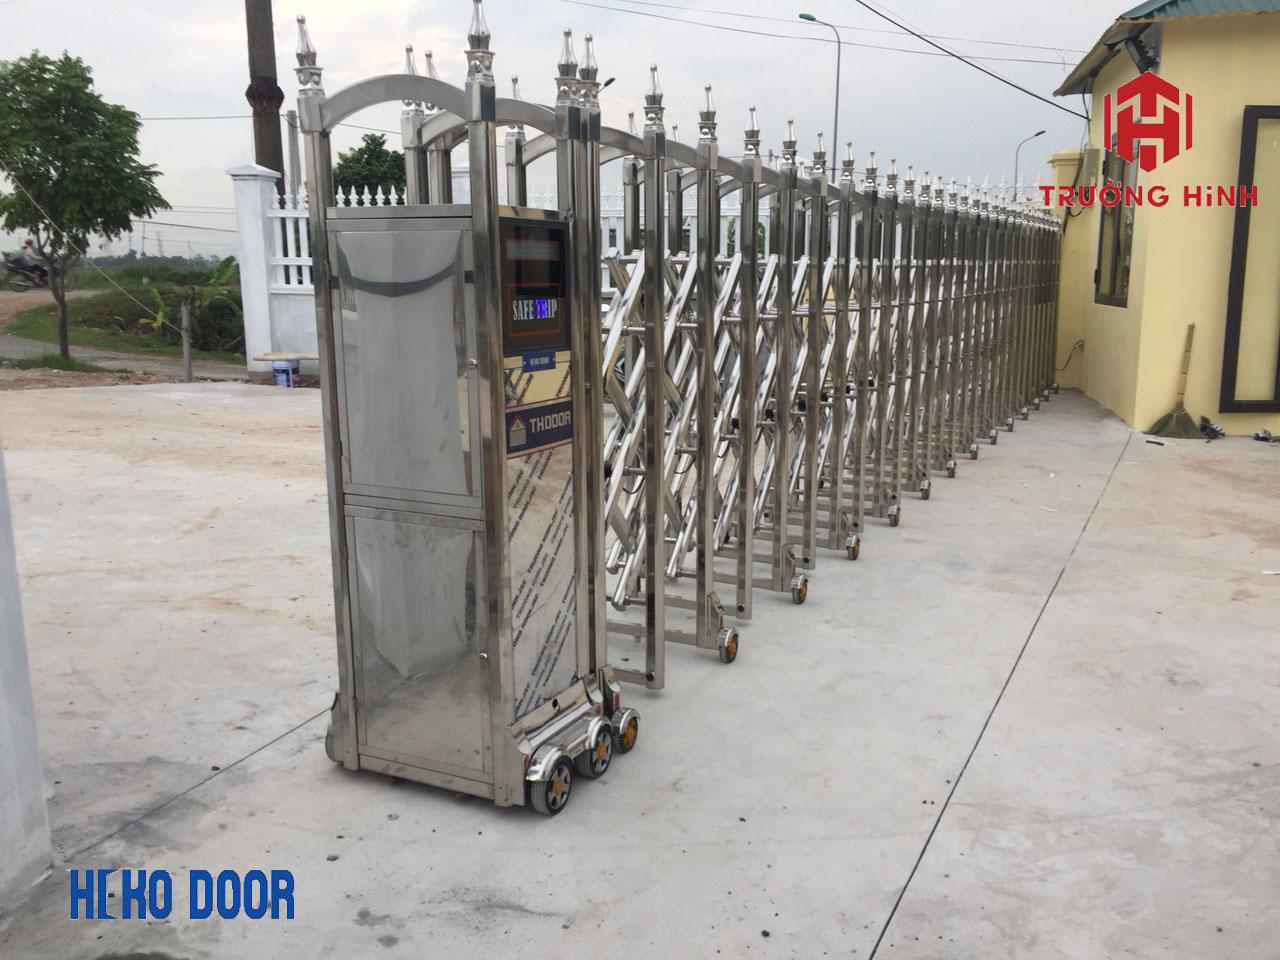 cổng xếp điện inox tại Trường Hinh